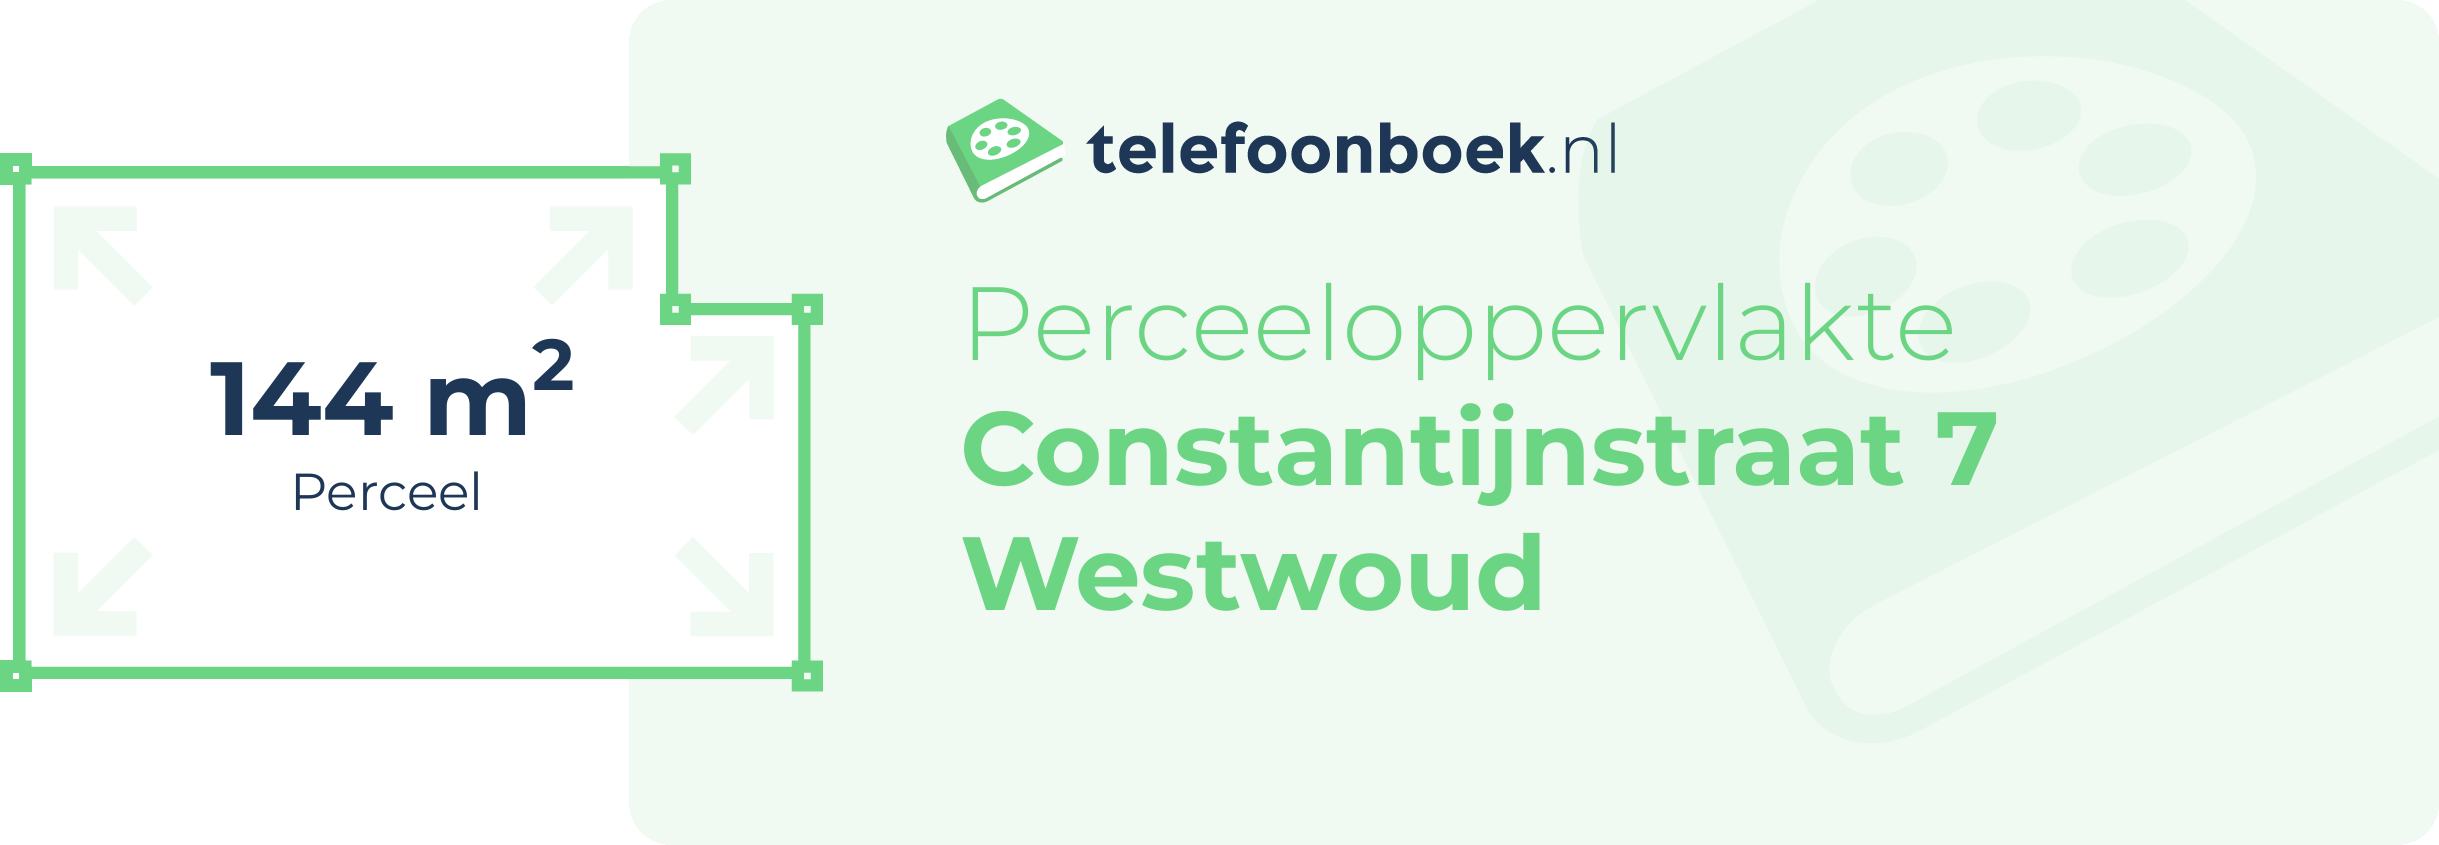 Perceeloppervlakte Constantijnstraat 7 Westwoud